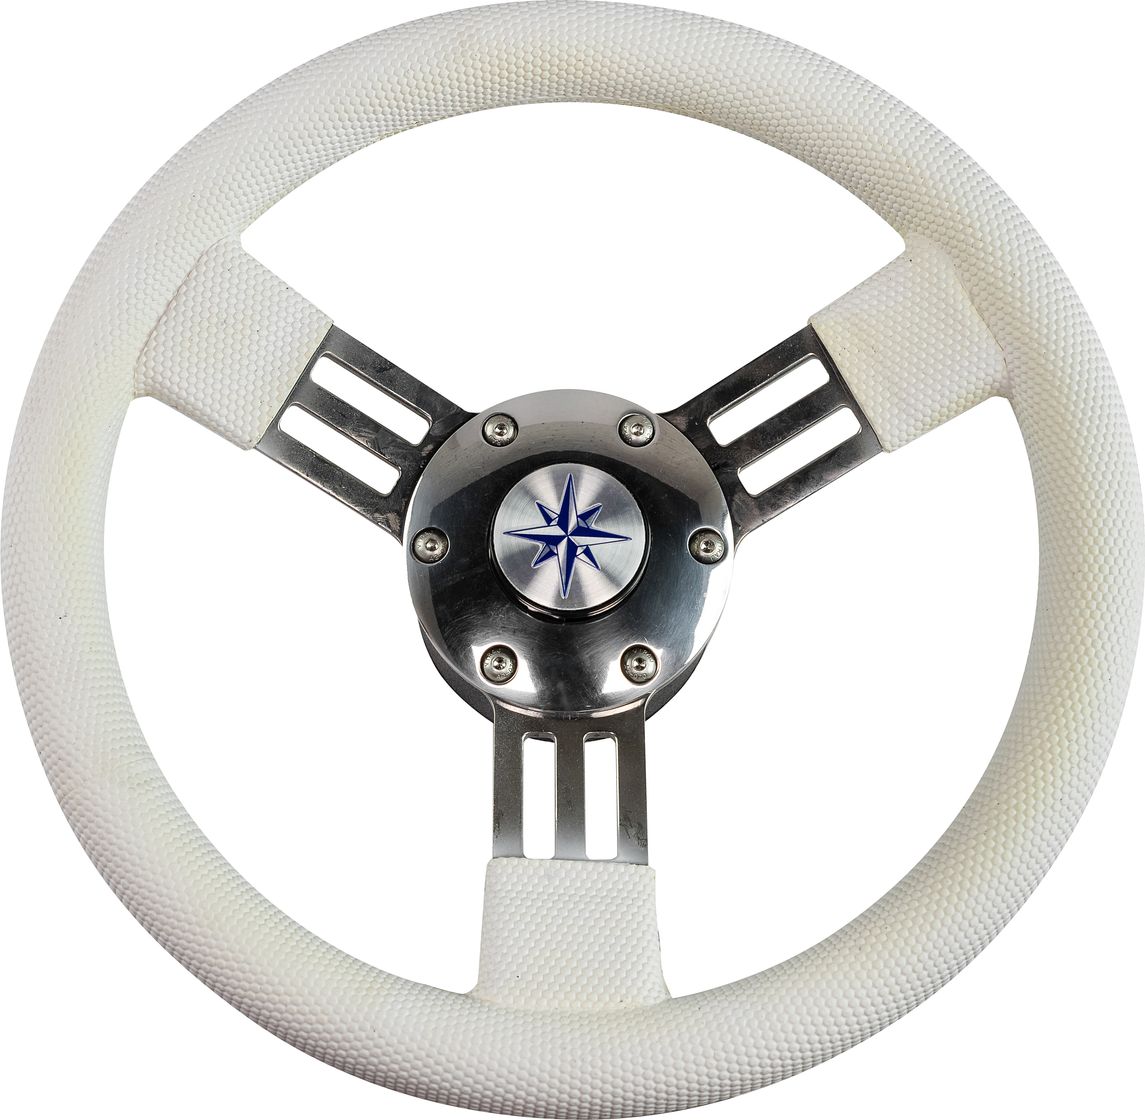 Рулевое колесо PEGASO обод белый, спицы серебряные д. 300 мм VN13327-08 рулевое колесо orion обод спицы серебряные д 355 мм vn960101 01